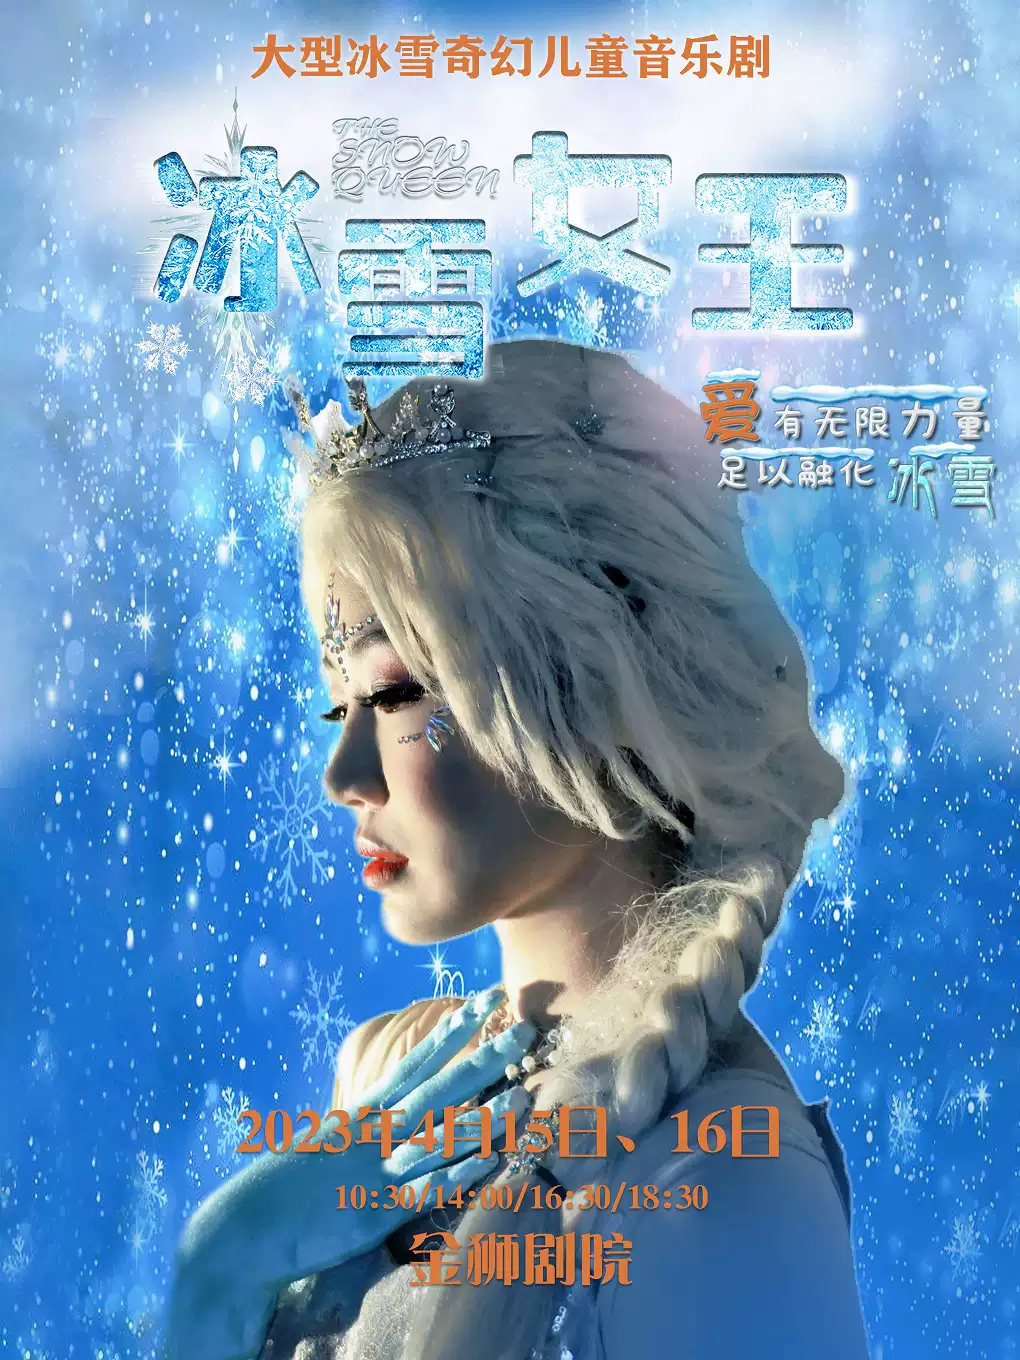 【重庆】【万州站】大型冰雪奇幻儿童音乐剧《冰雪女王》